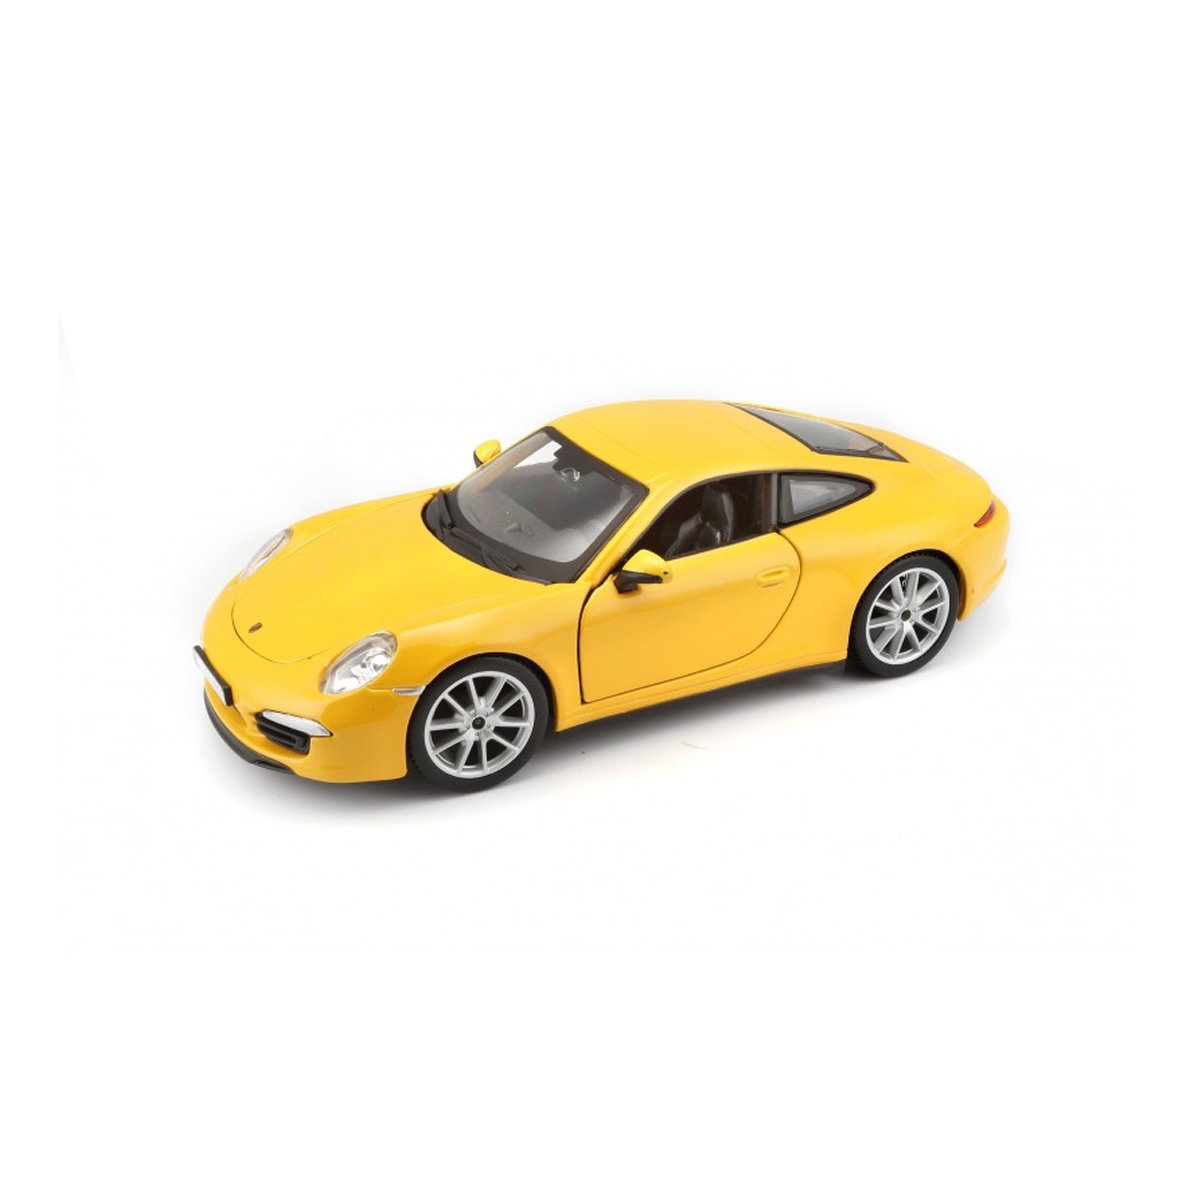 Burago 1:24 Porsche 911 Carrera S Model Araba